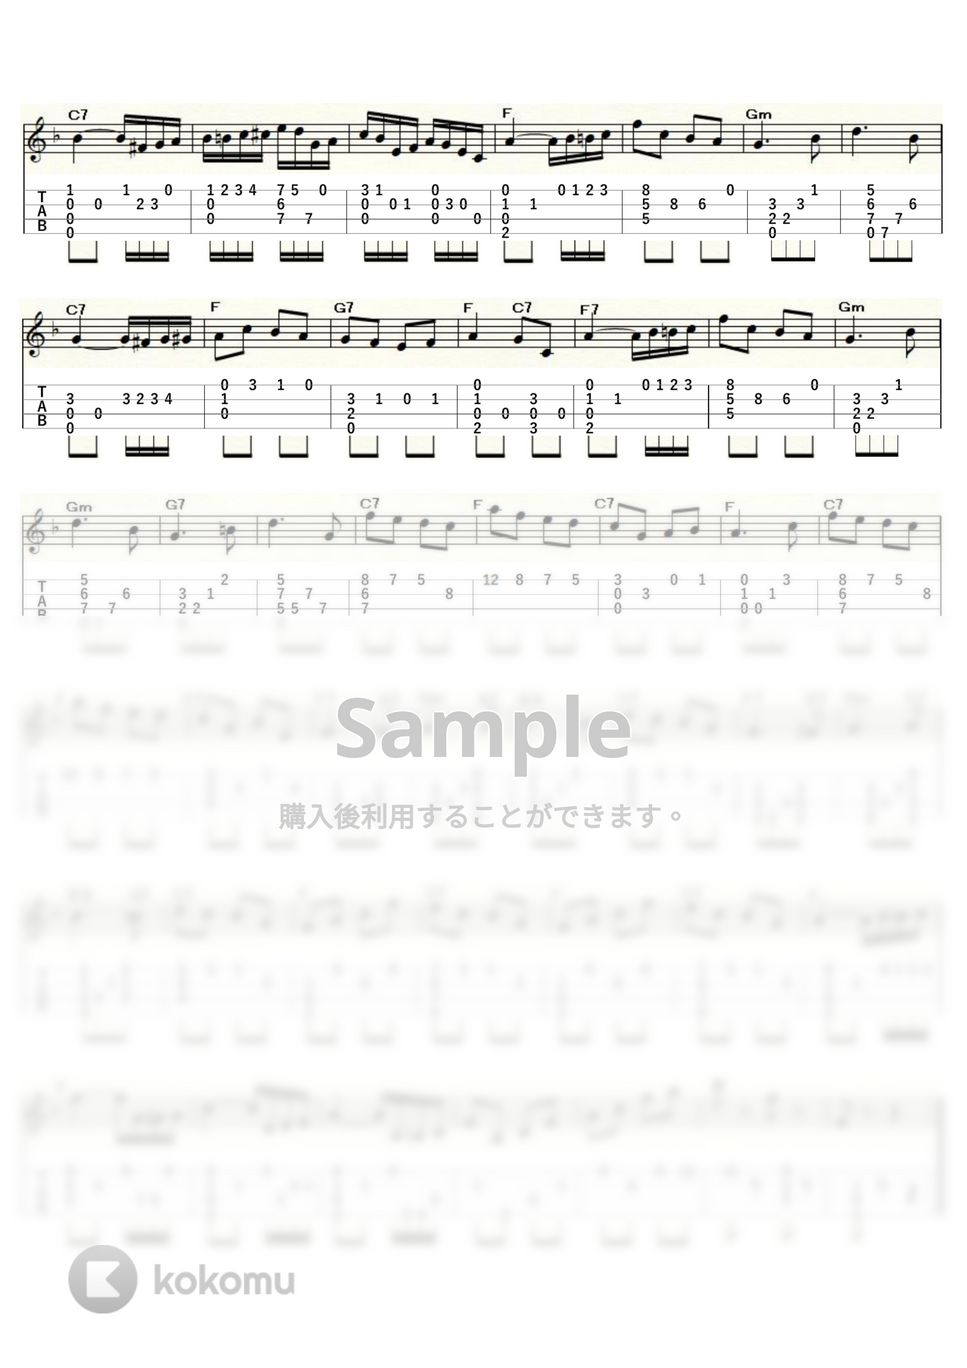 メンデルスゾーン - メンデルスゾーンの「春の歌」 (ｳｸﾚﾚｿﾛ / Low-G / 中級) by ukulelepapa